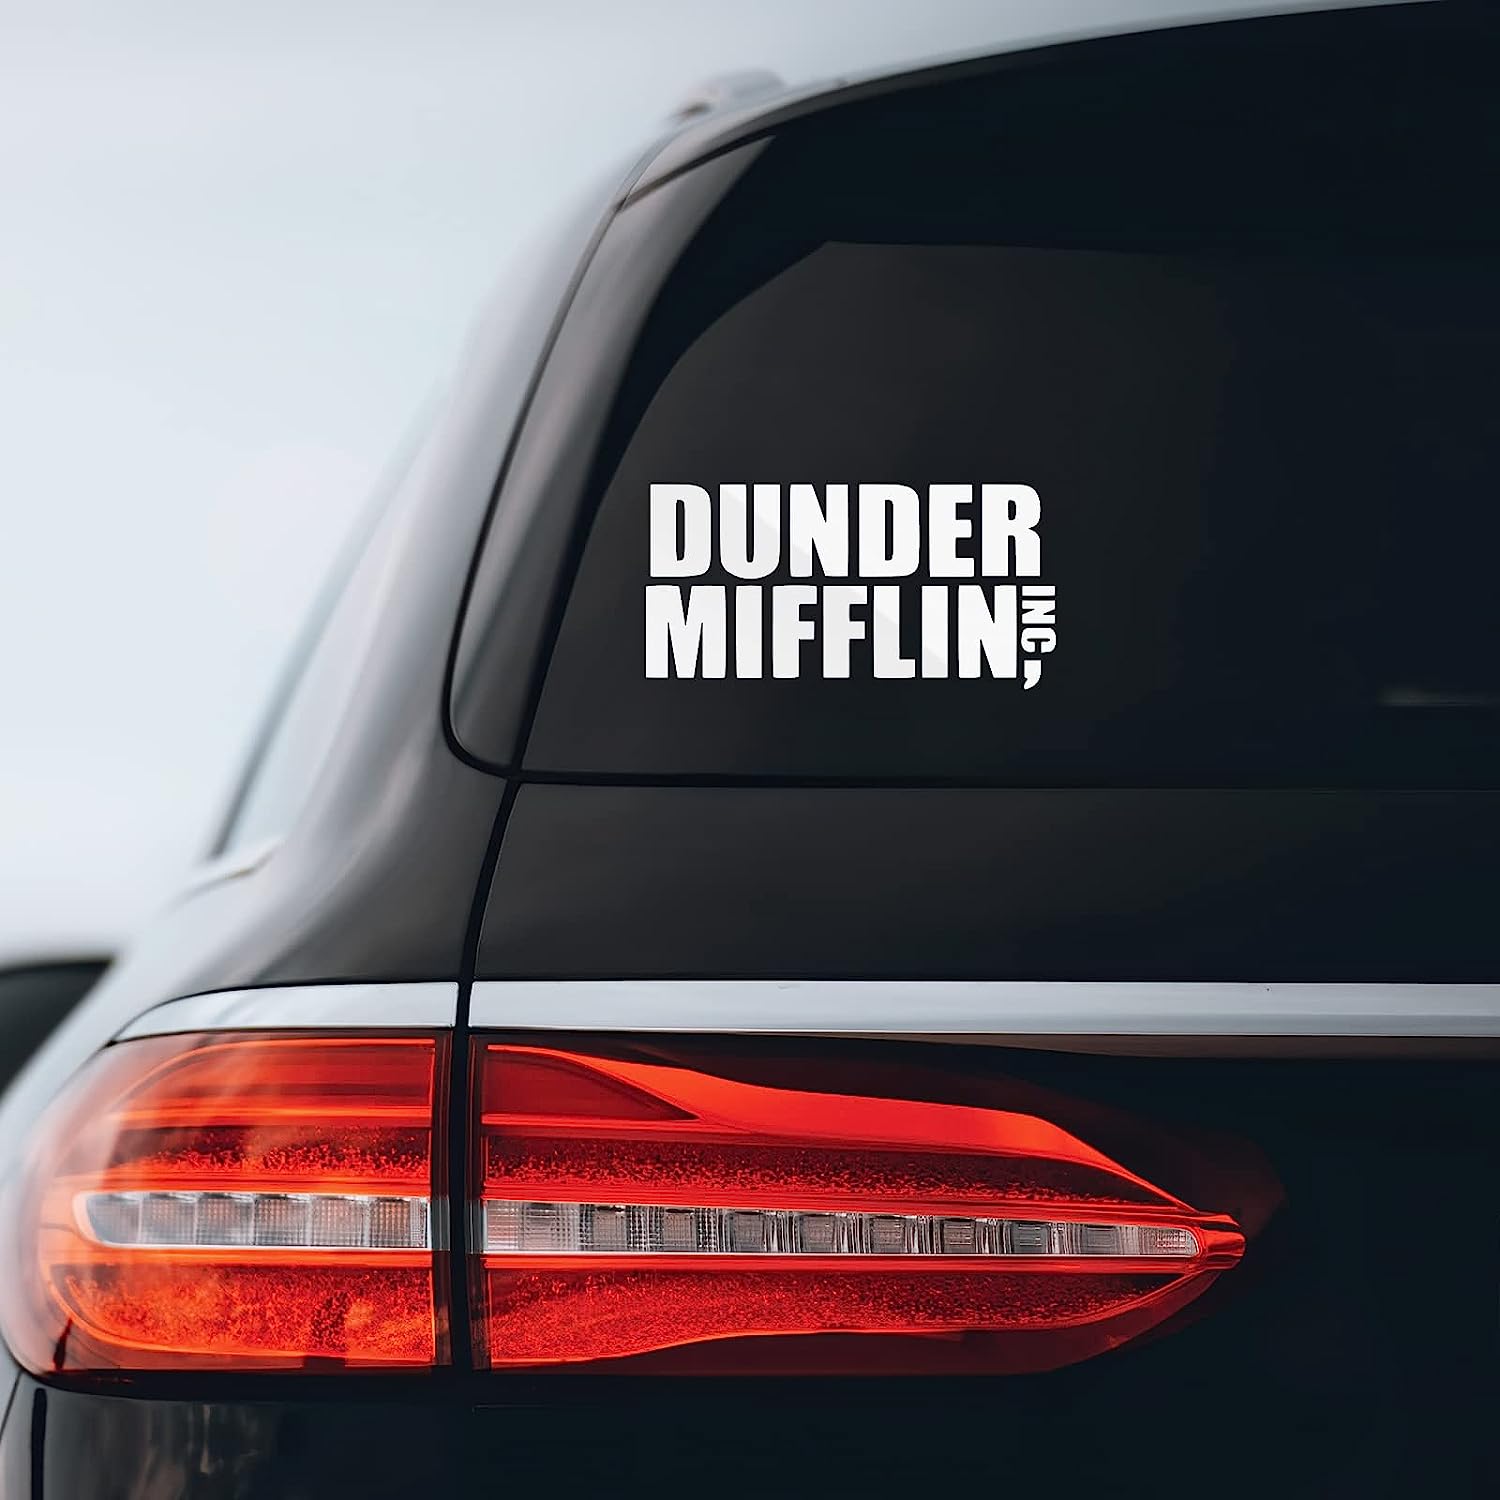 Dunder Mifflin The Office Logo' Sticker | Spreadshirt